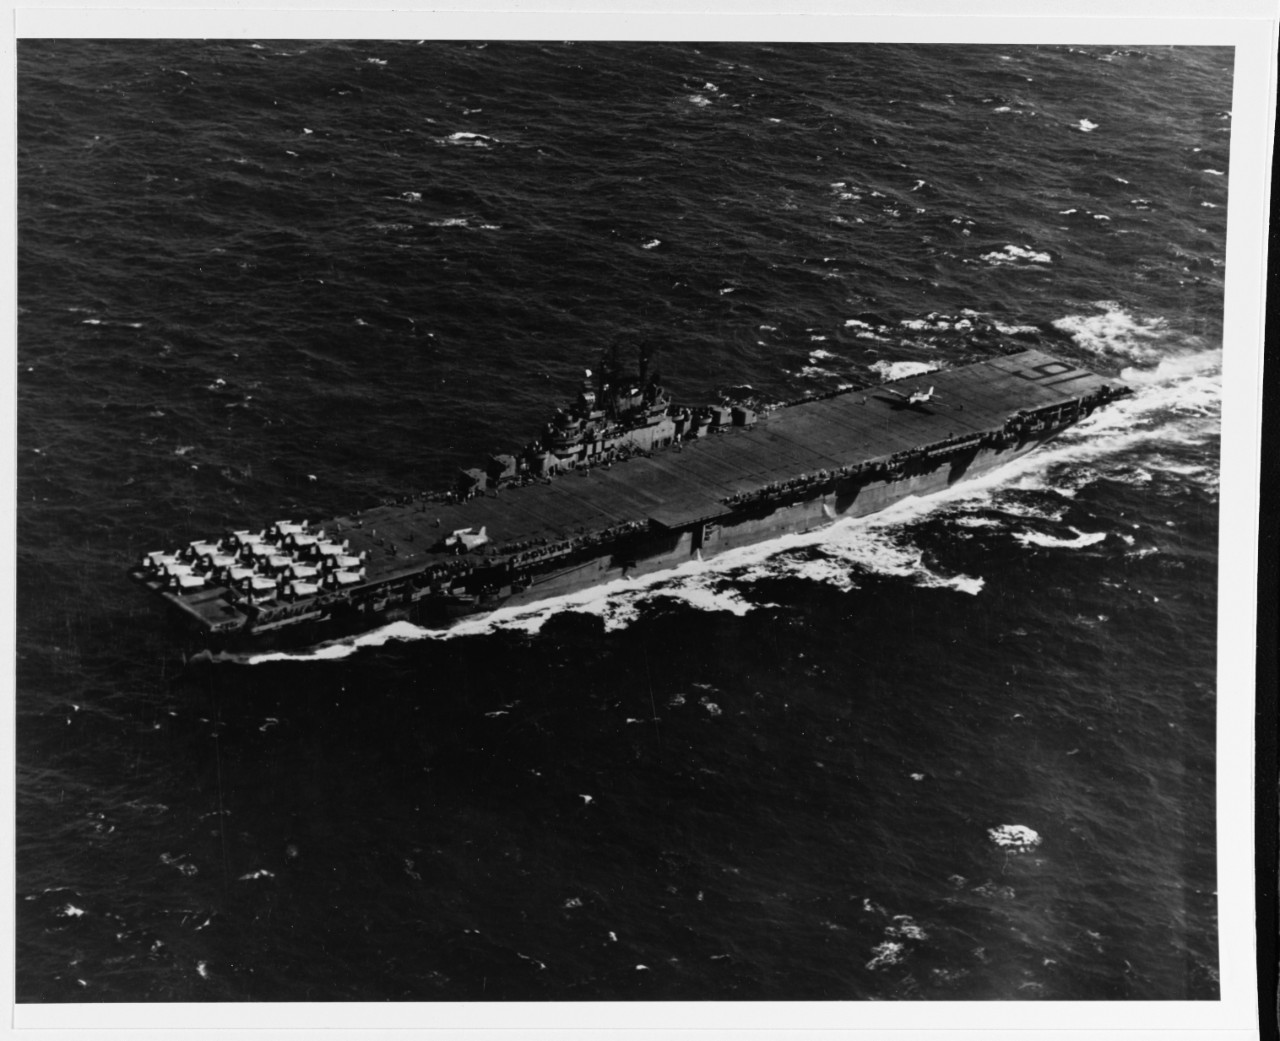 USS LEXINGTON (CV-16)